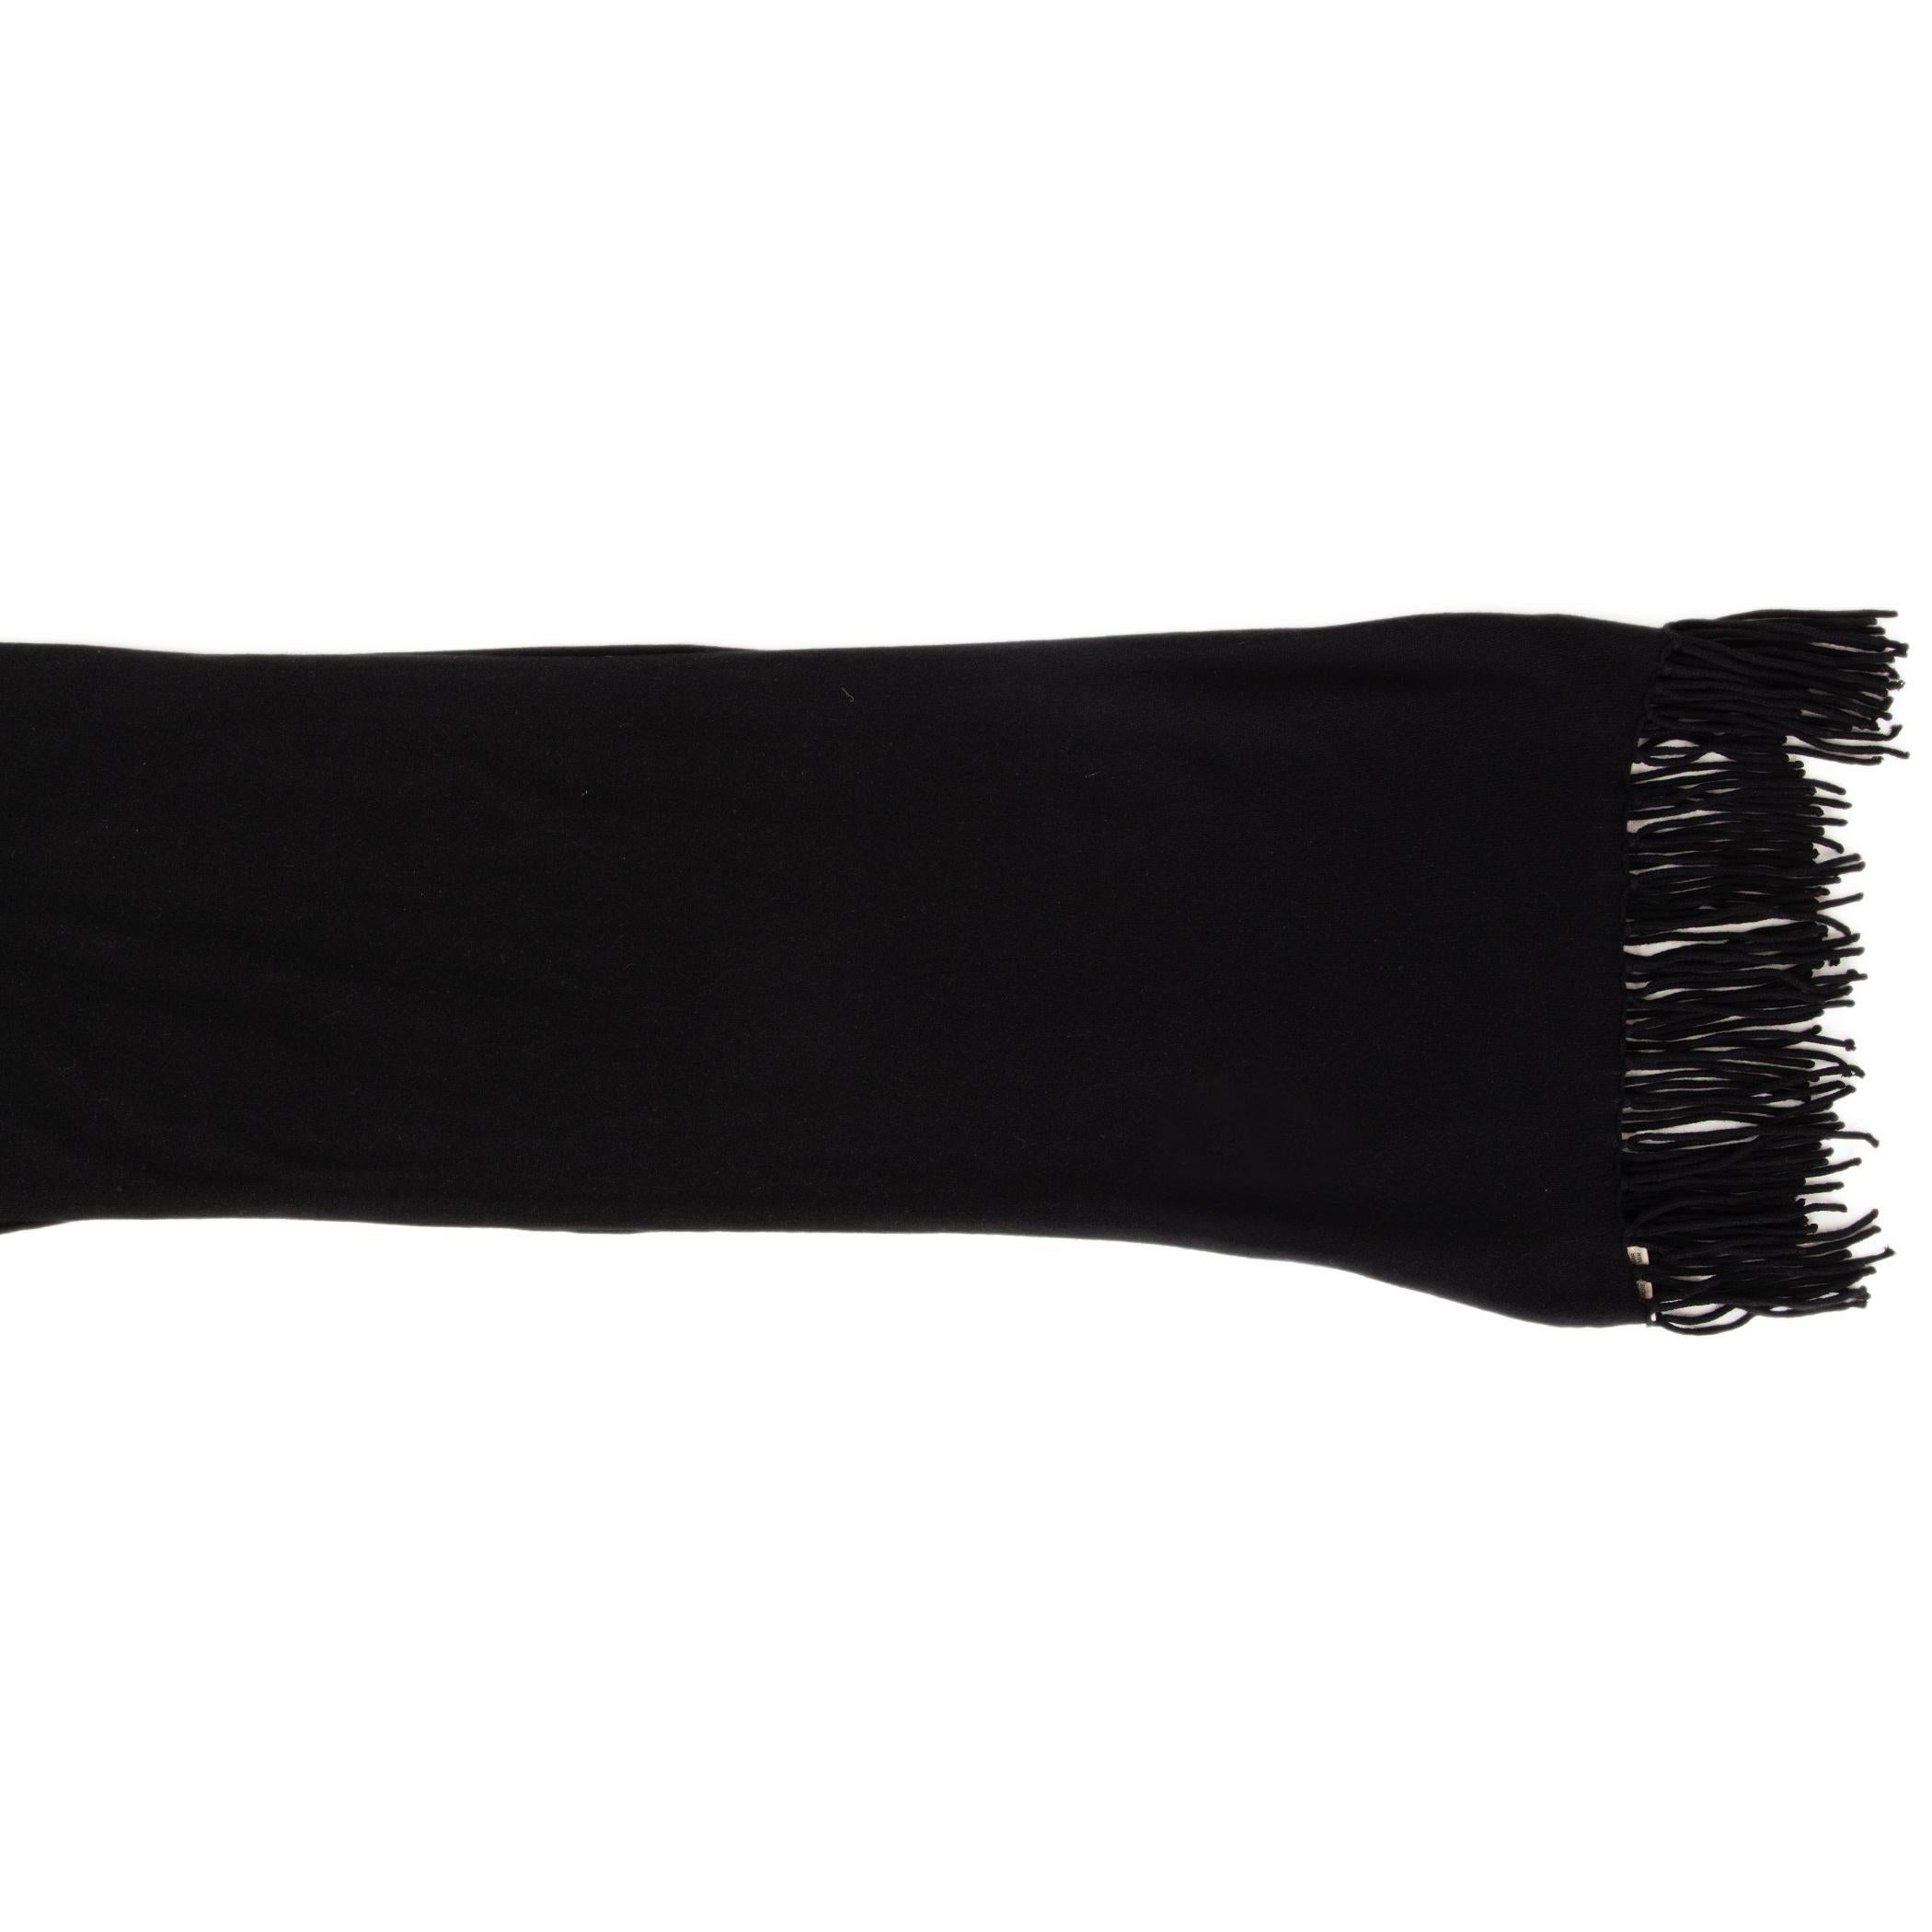 Echarpe fine Hermès en jersey de cachemire noir (100%) avec extrémités frangées. A été porté et est en excellent état.

Largeur 30cm (11.7in)
Longueur 200cm (78in)
